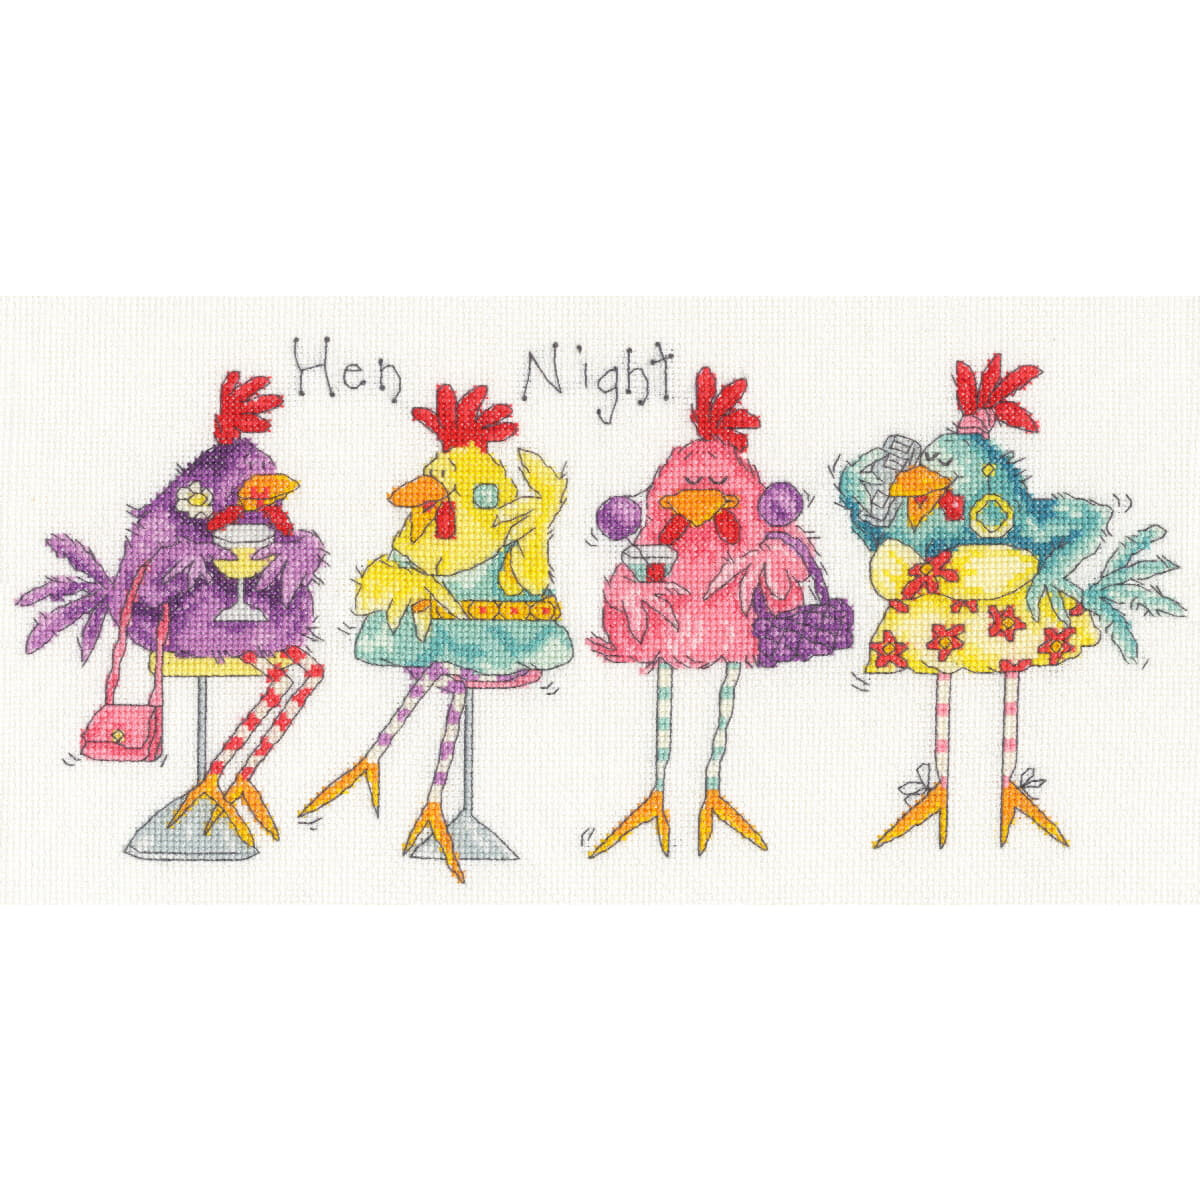 Vier komische kippen zijn afgebeeld in kleurrijke outfits...